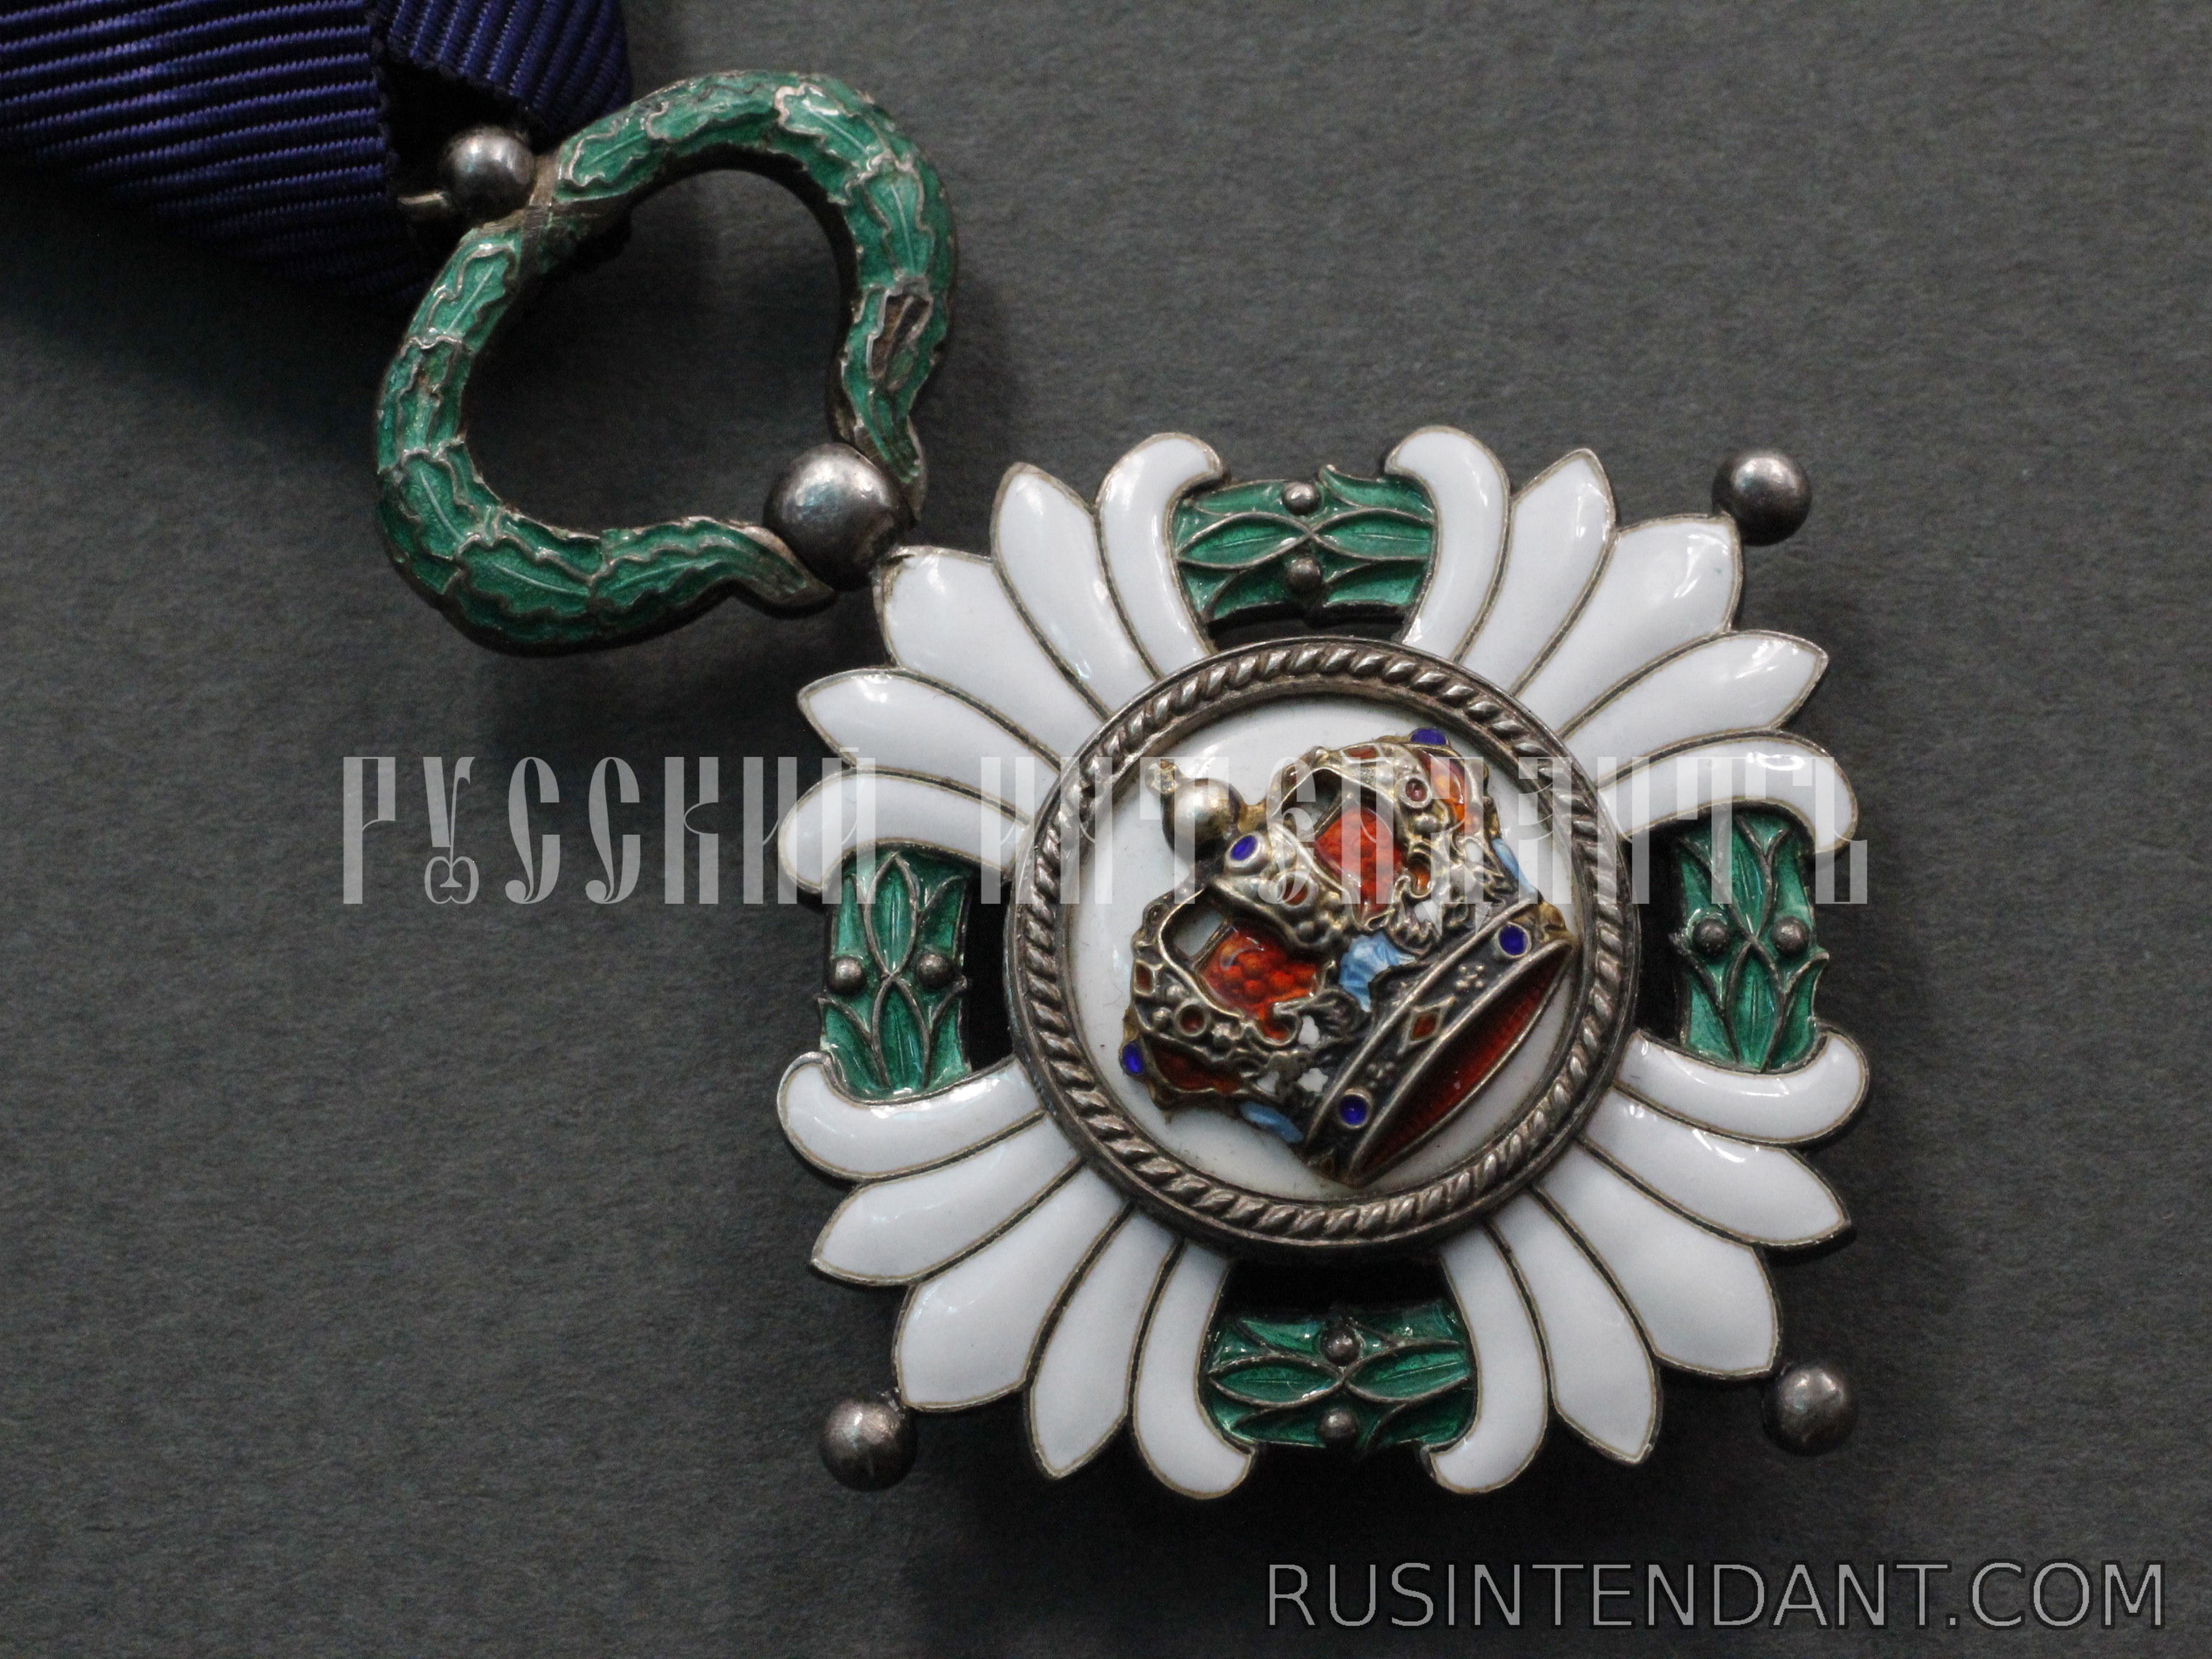 Фото 3: Орден Югославской короны 5 степени 